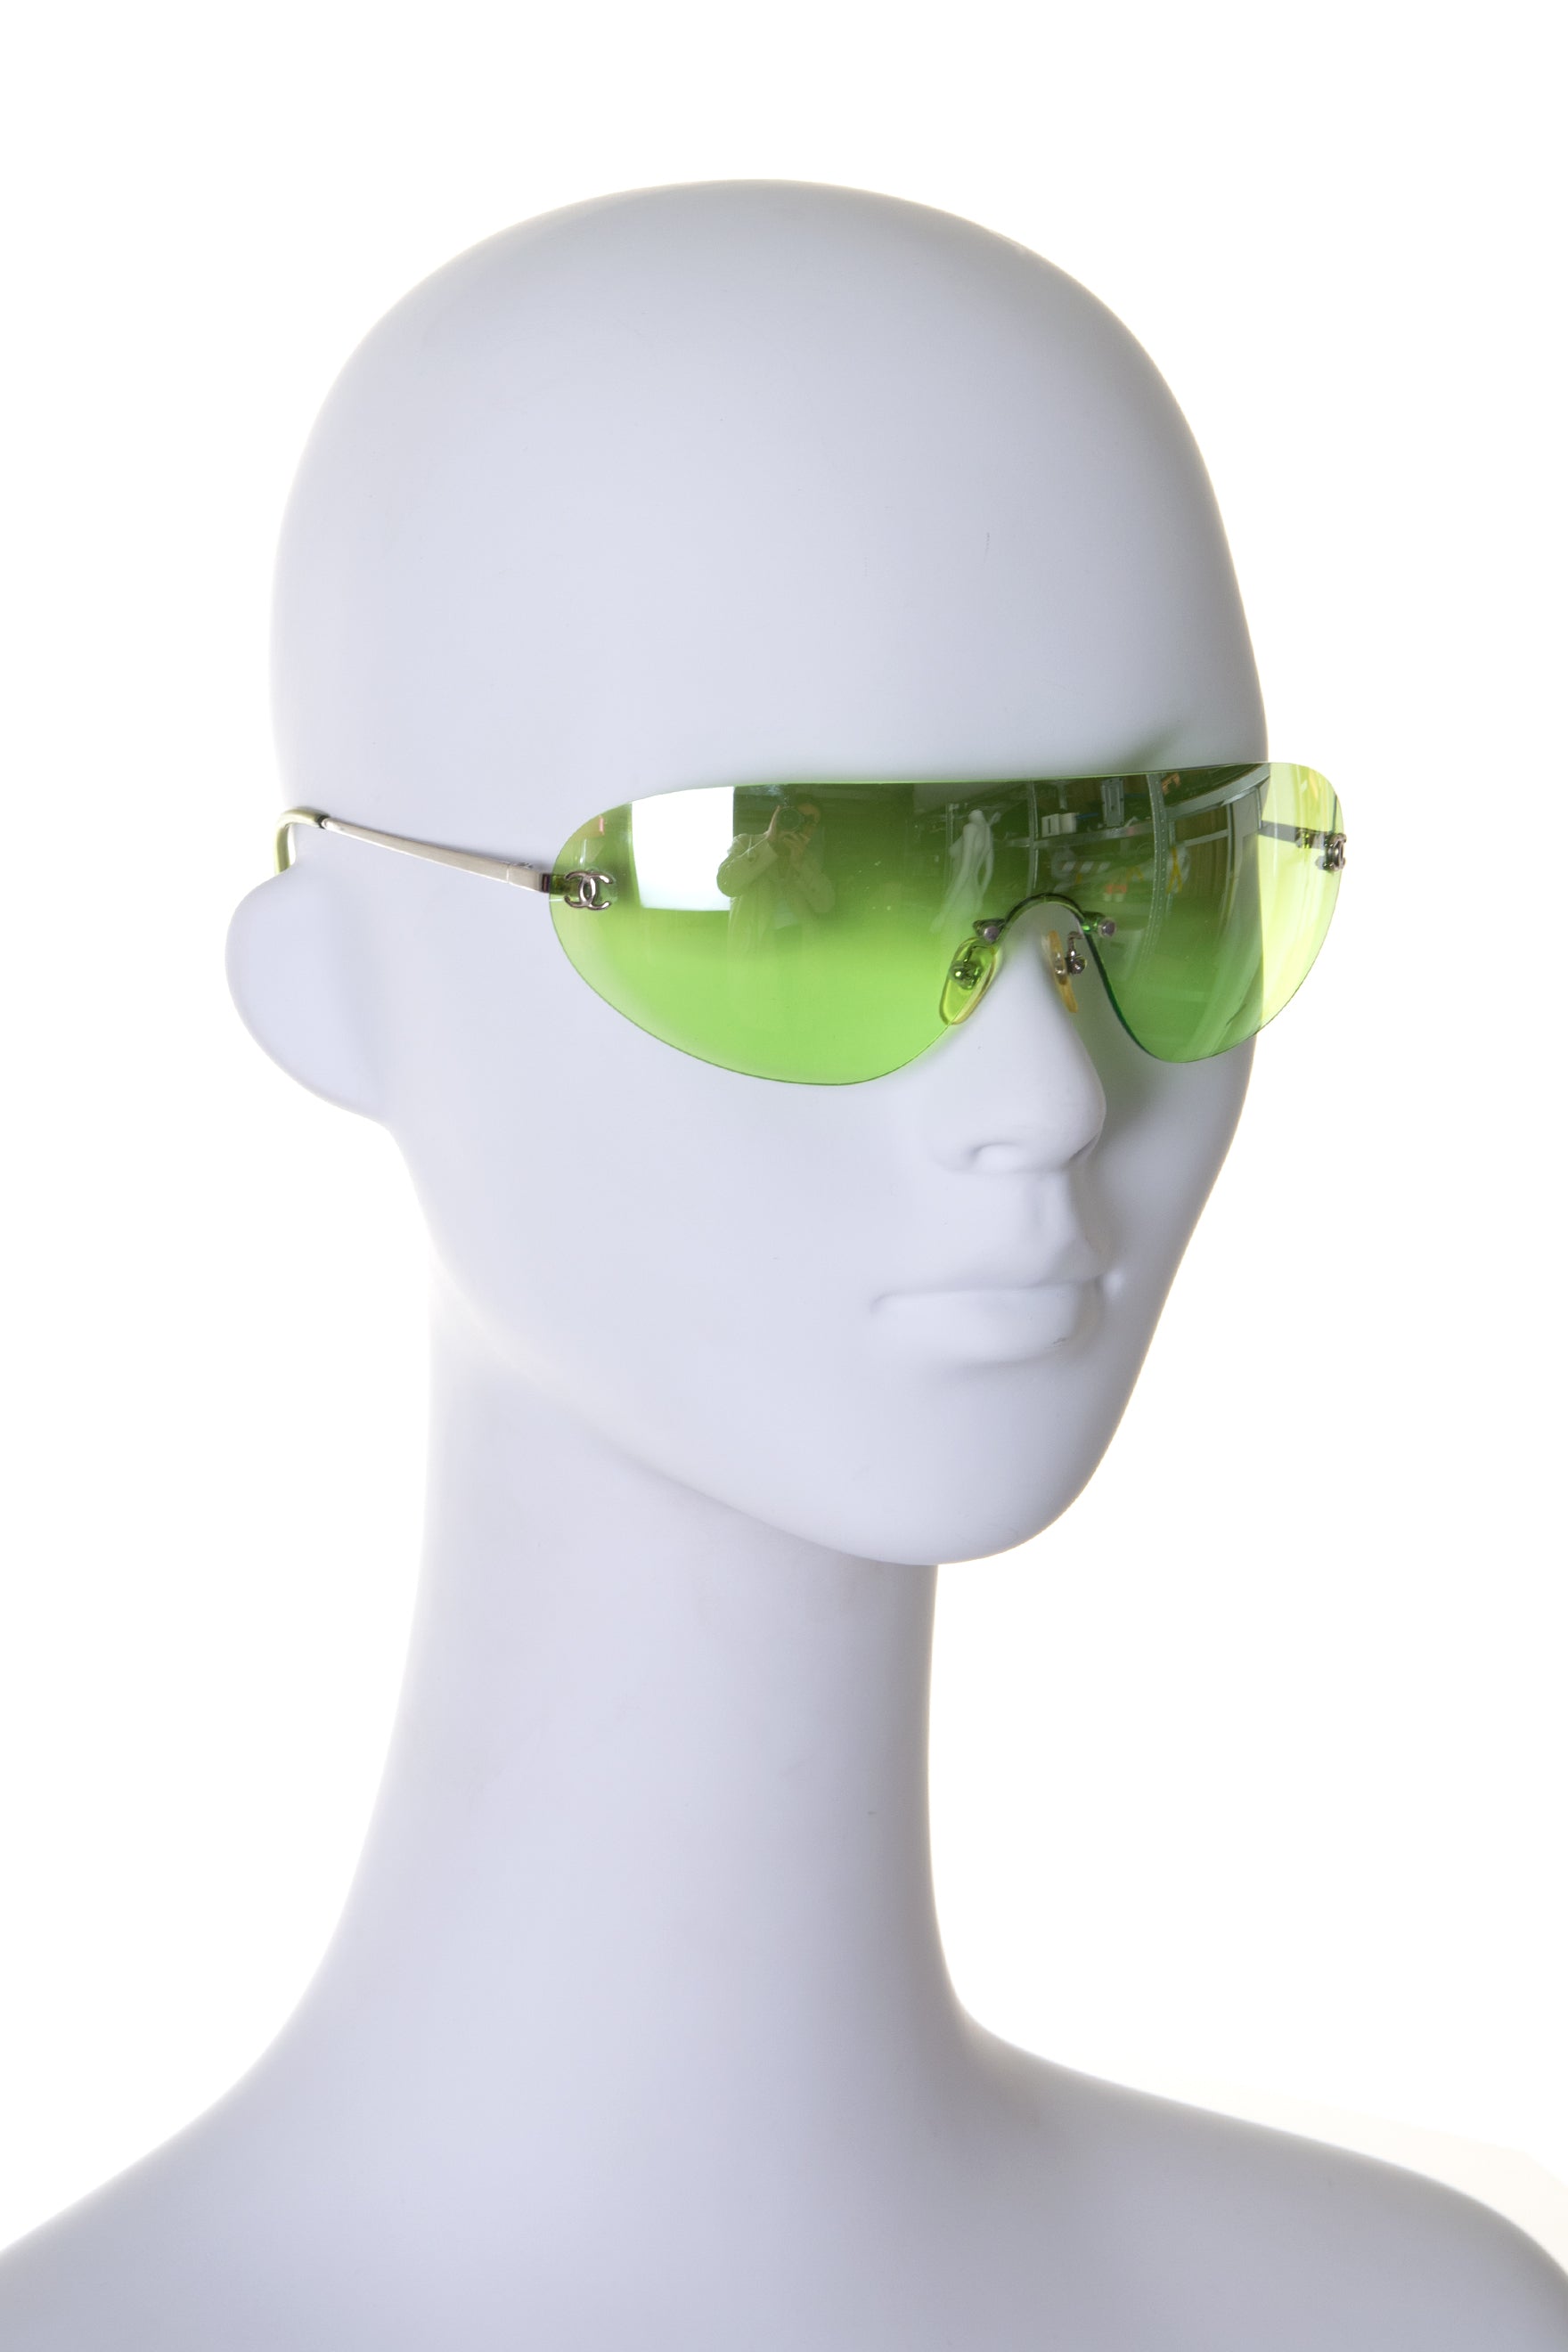 Chanel CC Shield Sunglasses